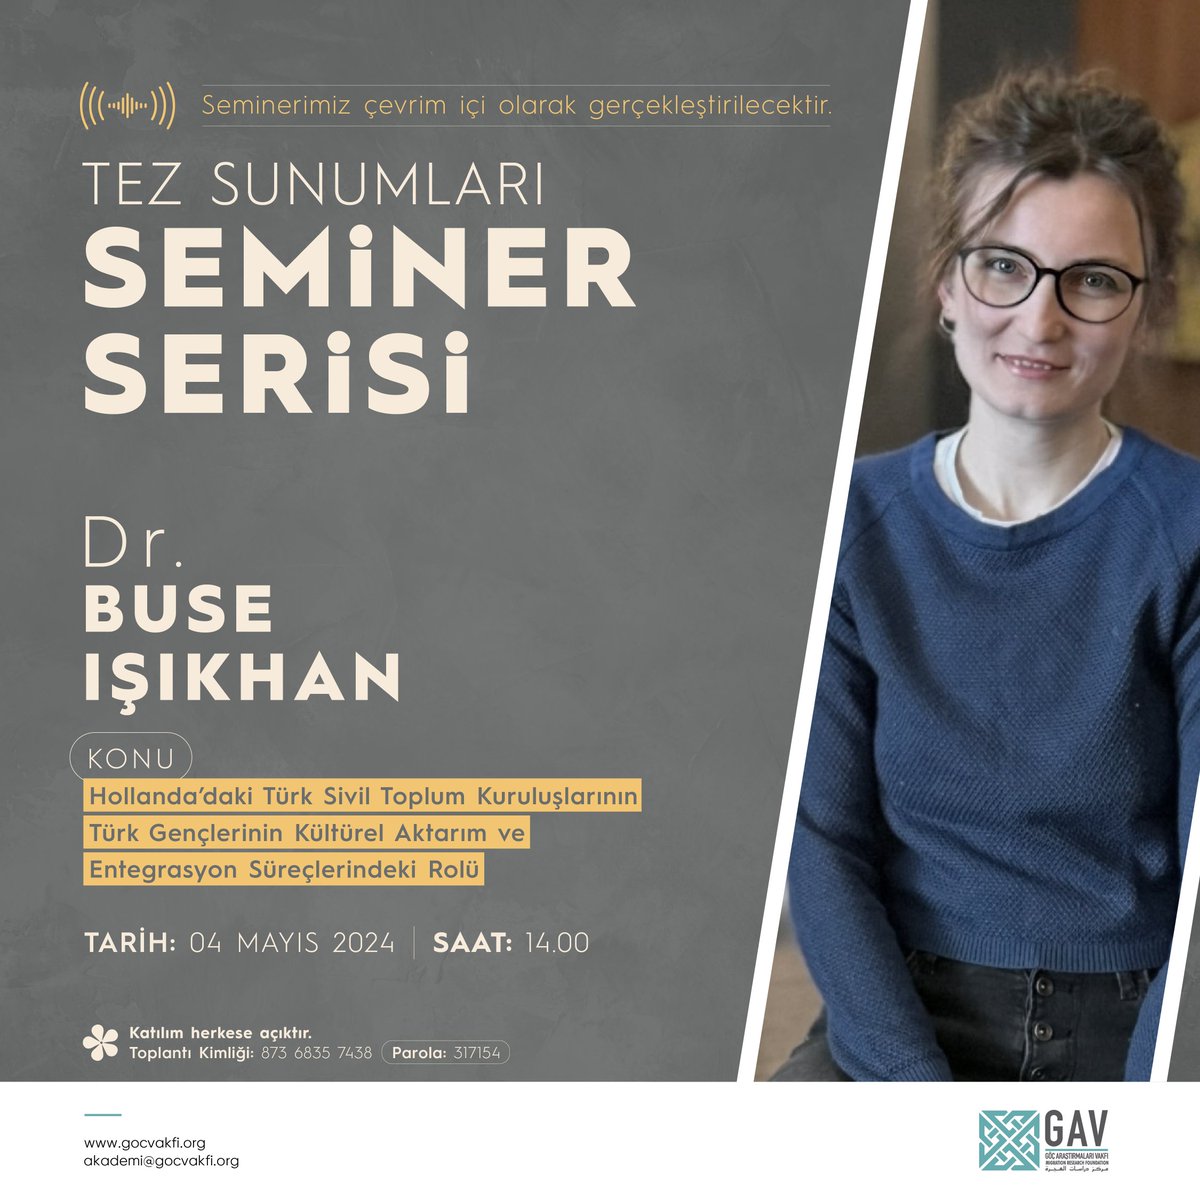 📌Tez Sunumları Seminer Serimiz Devam Ediyor!

Dr. Buse Işıkhan, 4 Mayıs Cumartesi günü 'Hollanda'da ki Türk Sivil Toplum Kuruluşlarının Türk Gençlerinin Kültürel Aktarım ve Entegrasyon Süreçlerindeki Rolü' başlıklı semineriyle bizlerle olacak.